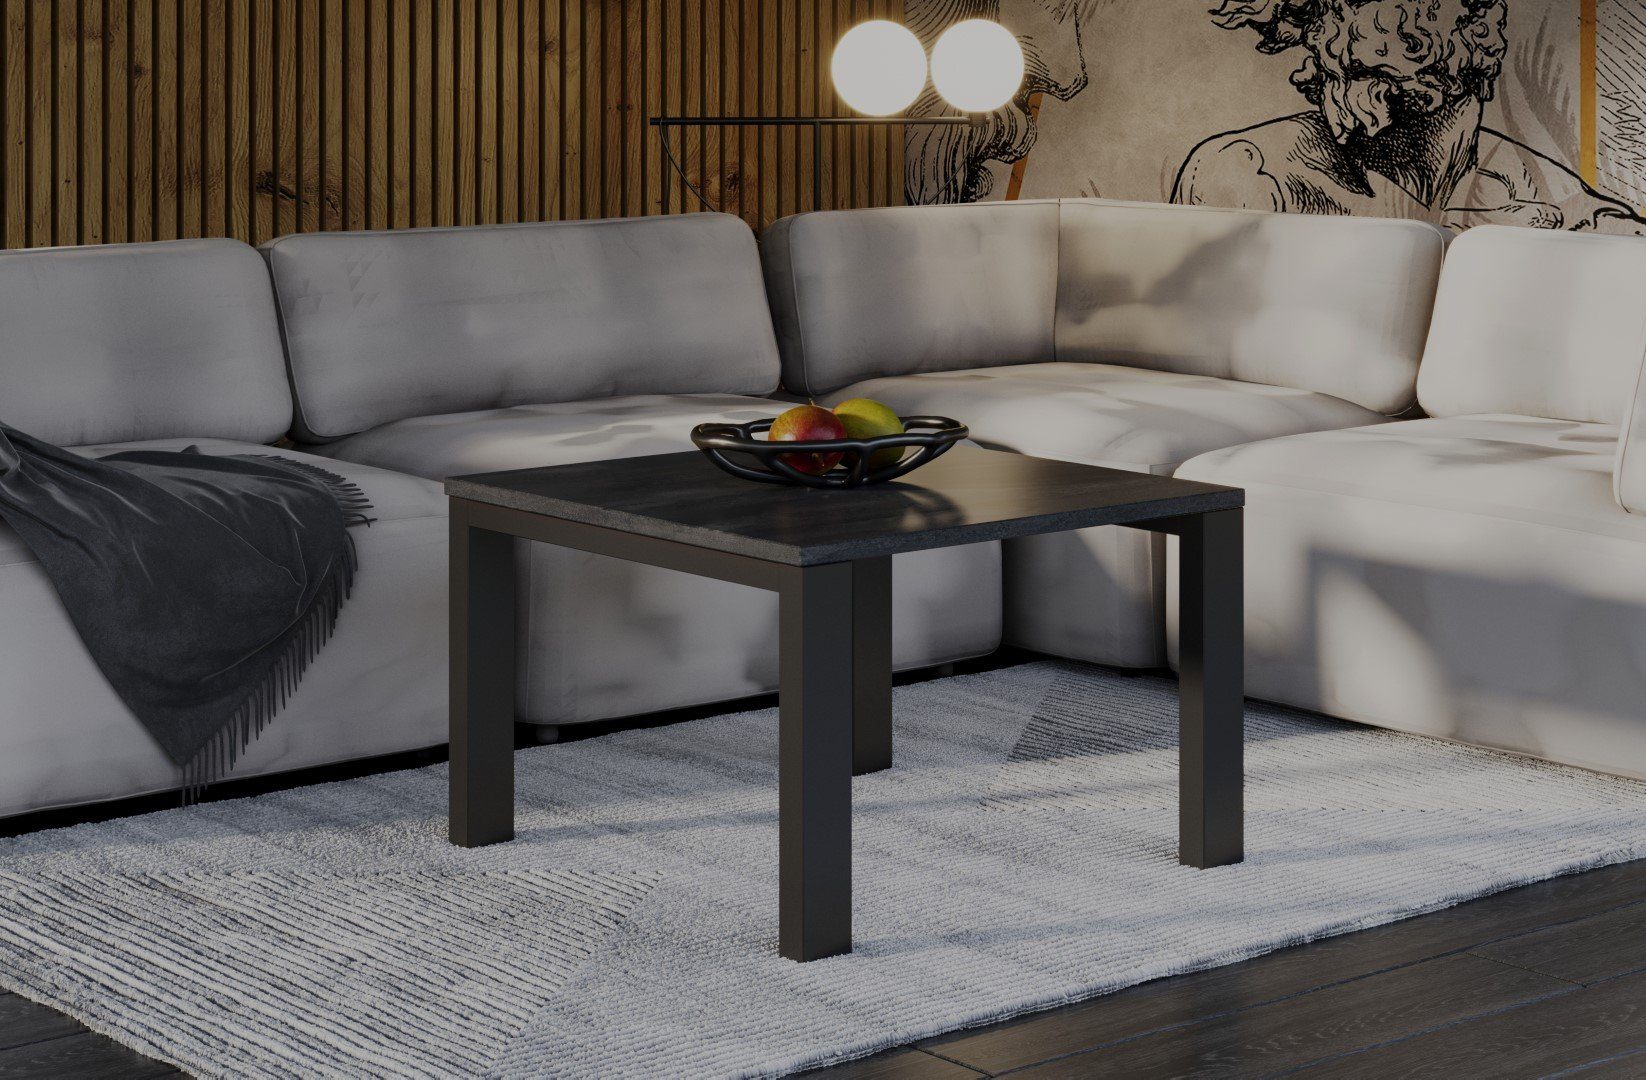 Endo-Moebel Couchtisch Garold 80 cm / 120cm Metallgestell Wohnzimmertisch, hochwertiger Tisch, leicht aufzubauen Beton Dunkel